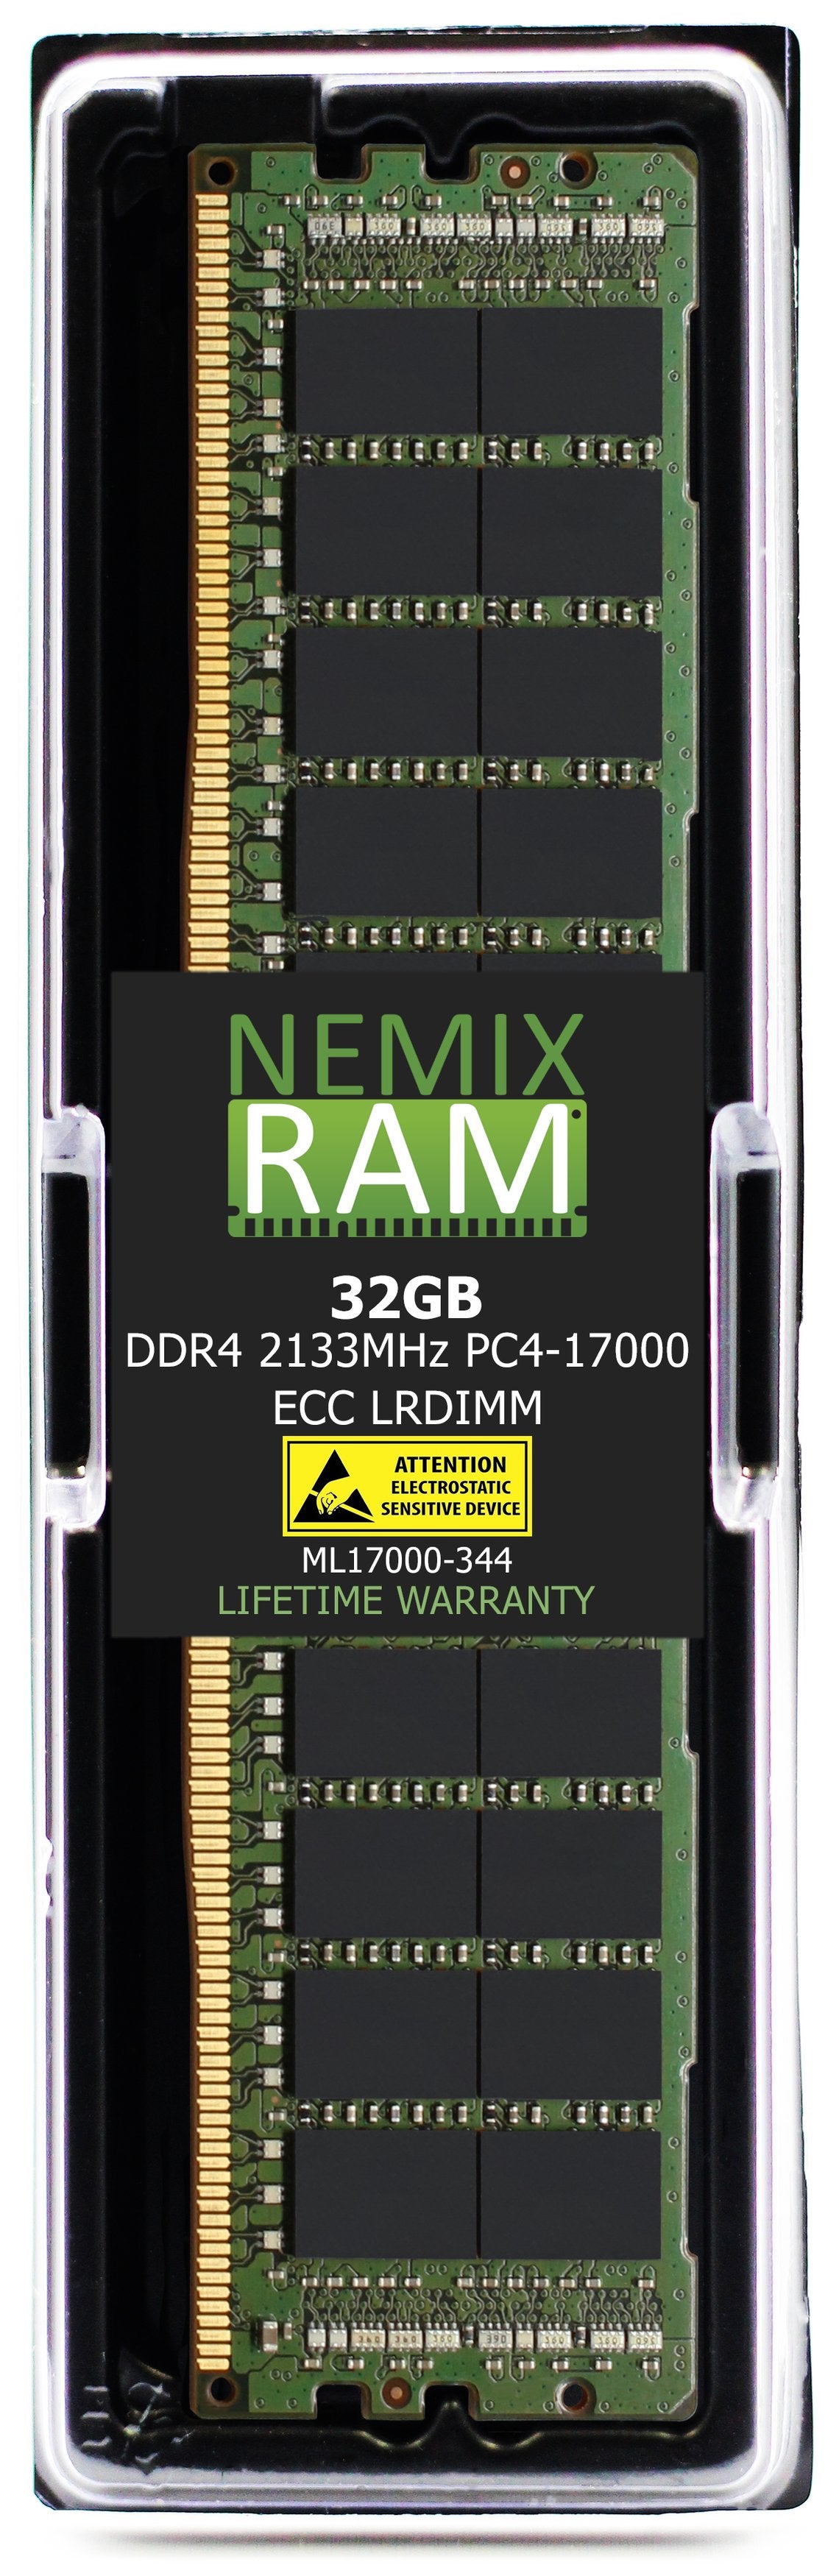 32GB DDR4 2133MHZ PC4-17000 LRDIMM Compatible with Supermicro MEM-DR432L-HL01-LR21